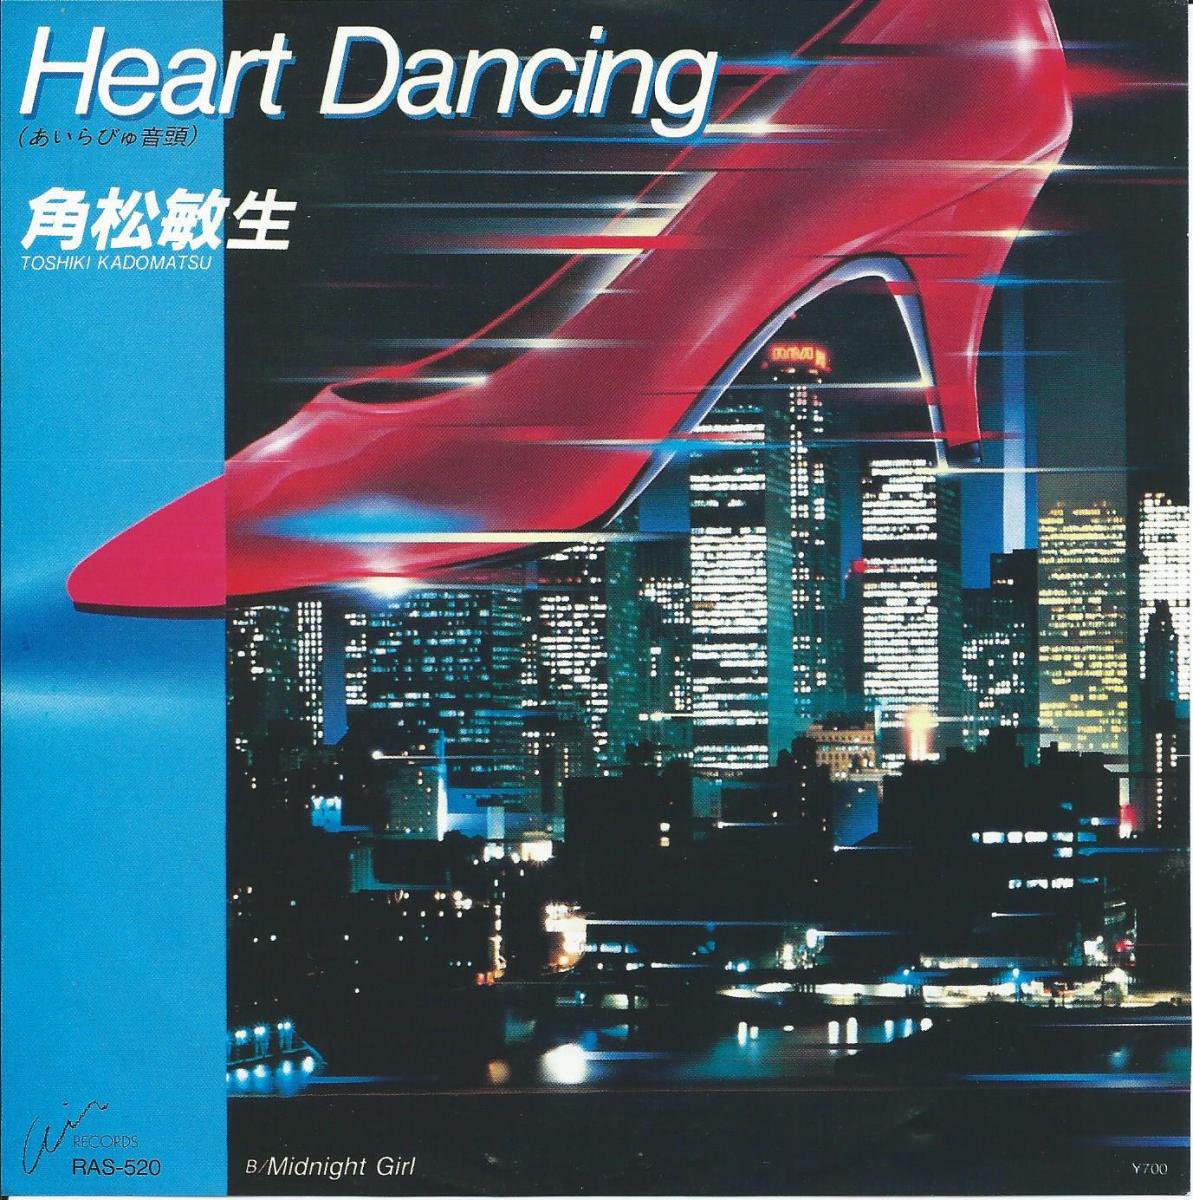 角松敏生 TOSHIKI KADOMATSU / HEART DANCING (あいらびゅ音頭 